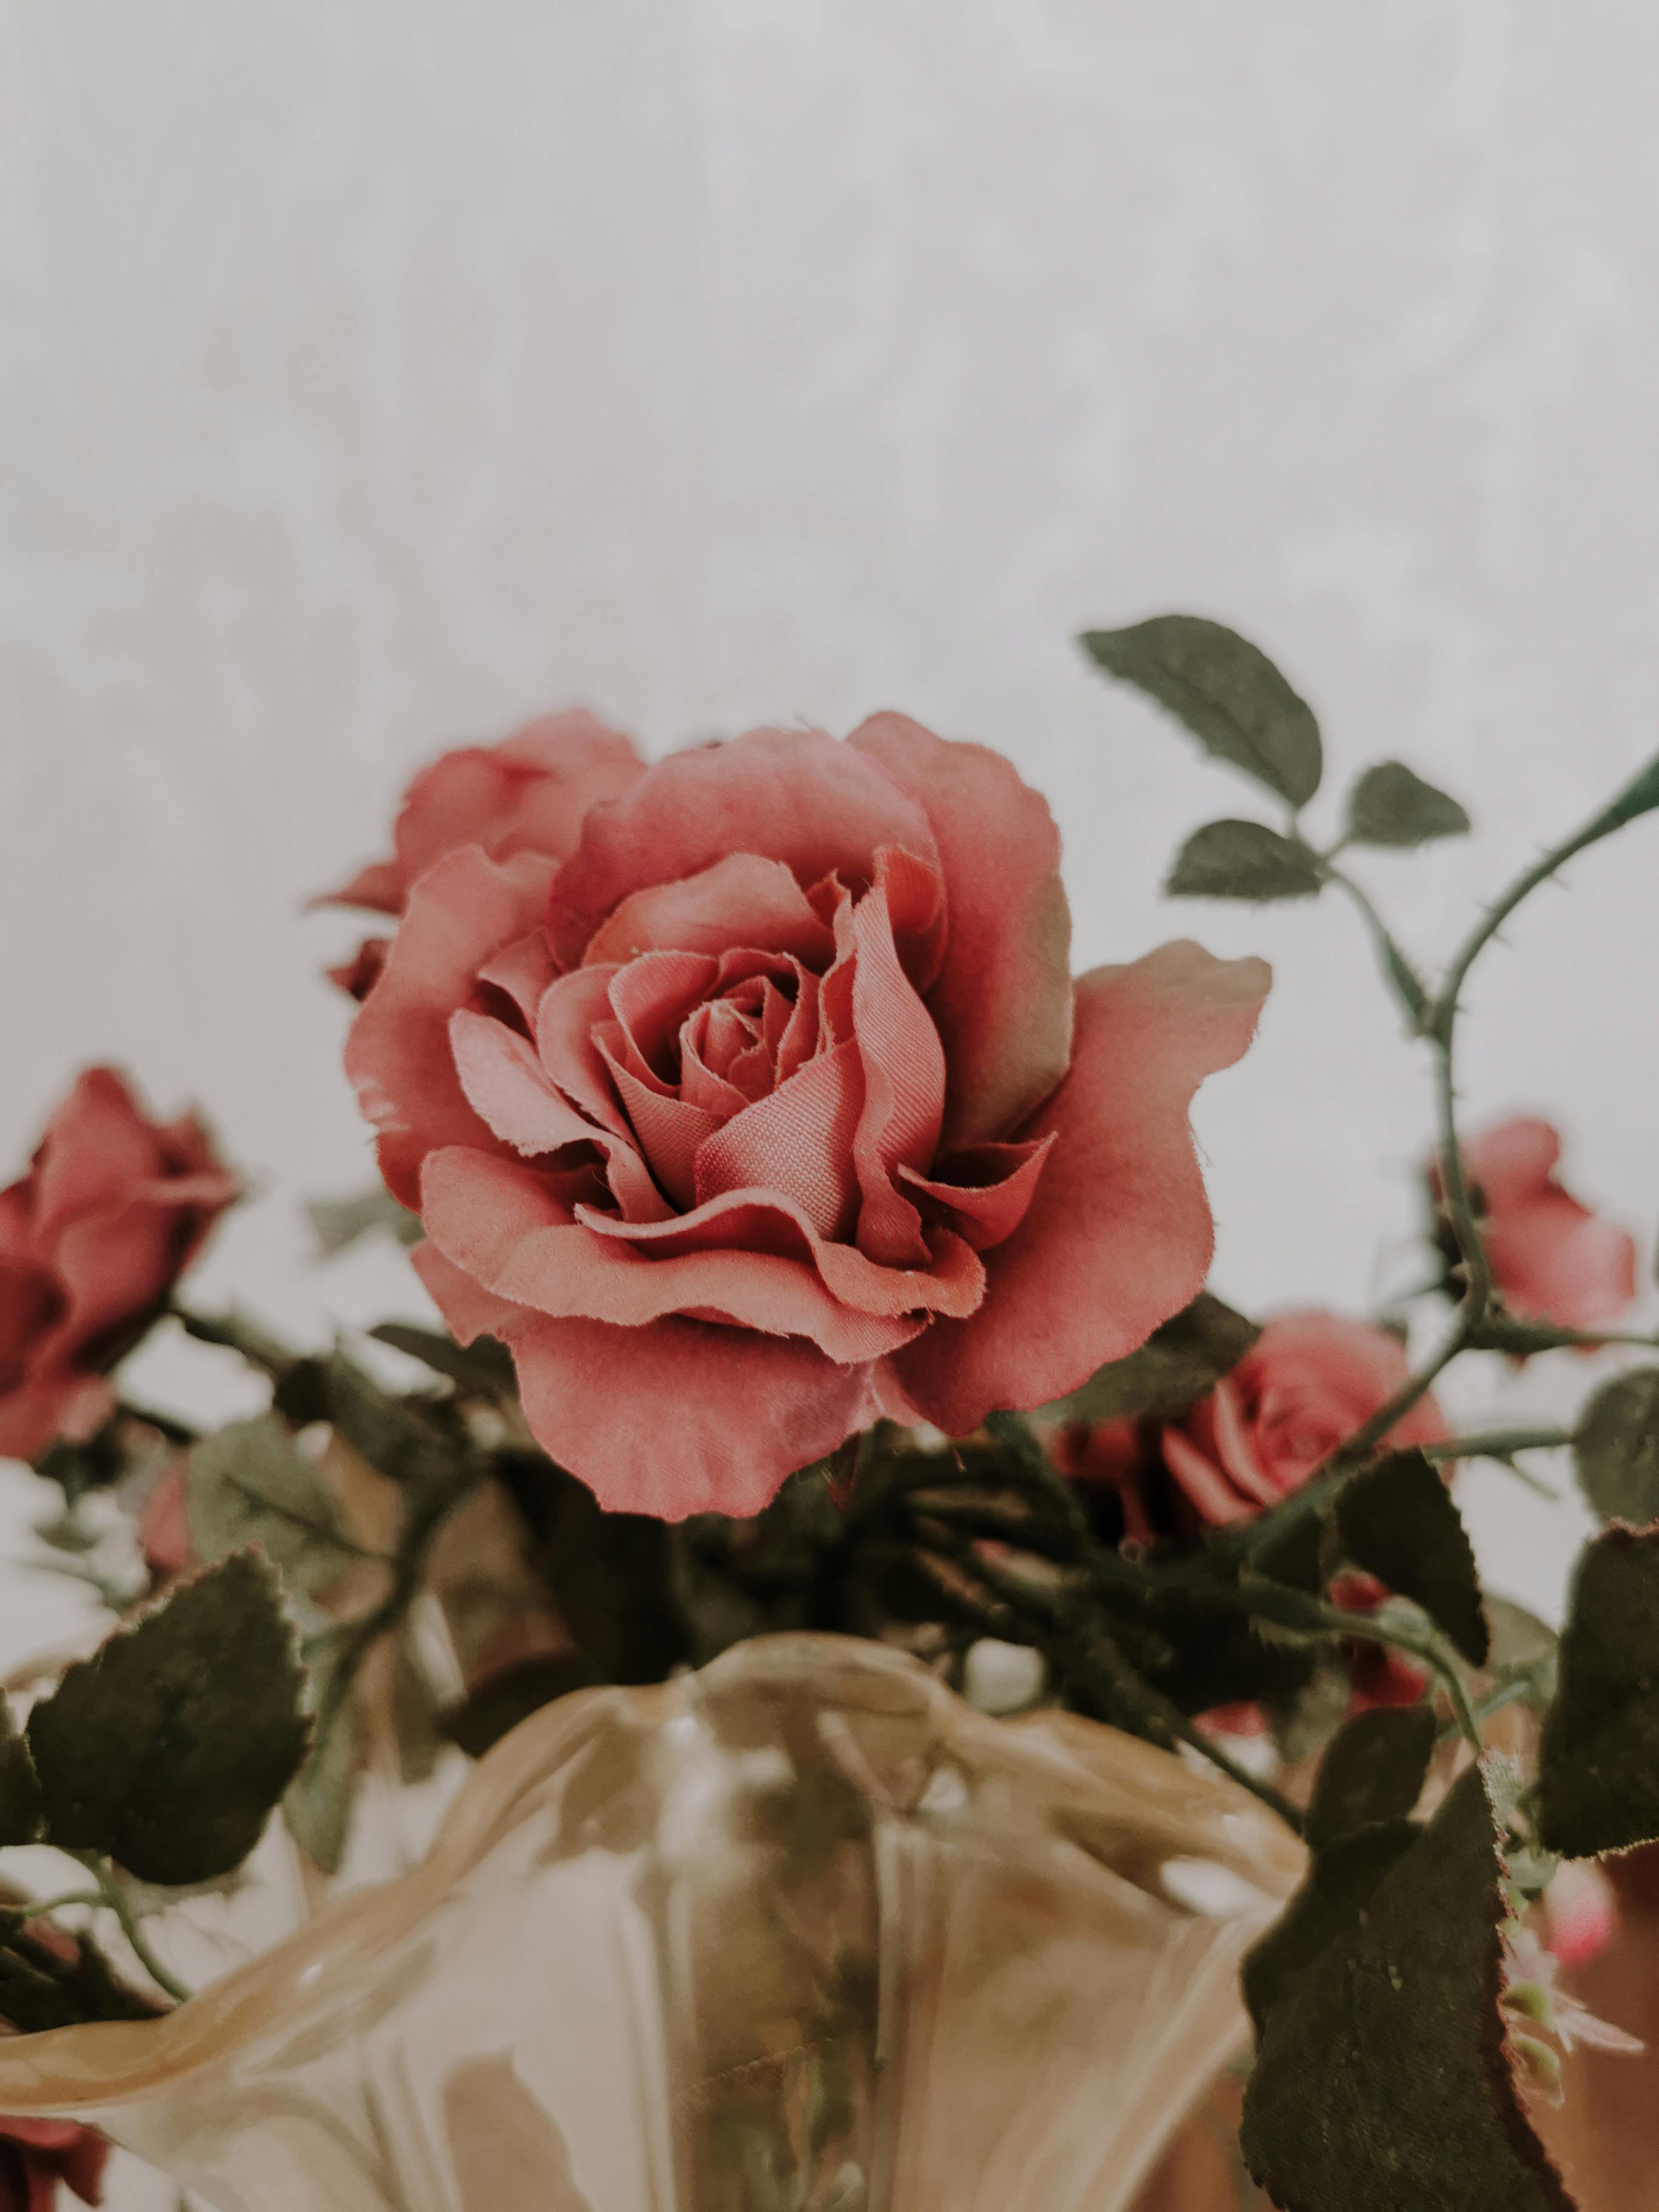 vintage rose backgrounds tumblr